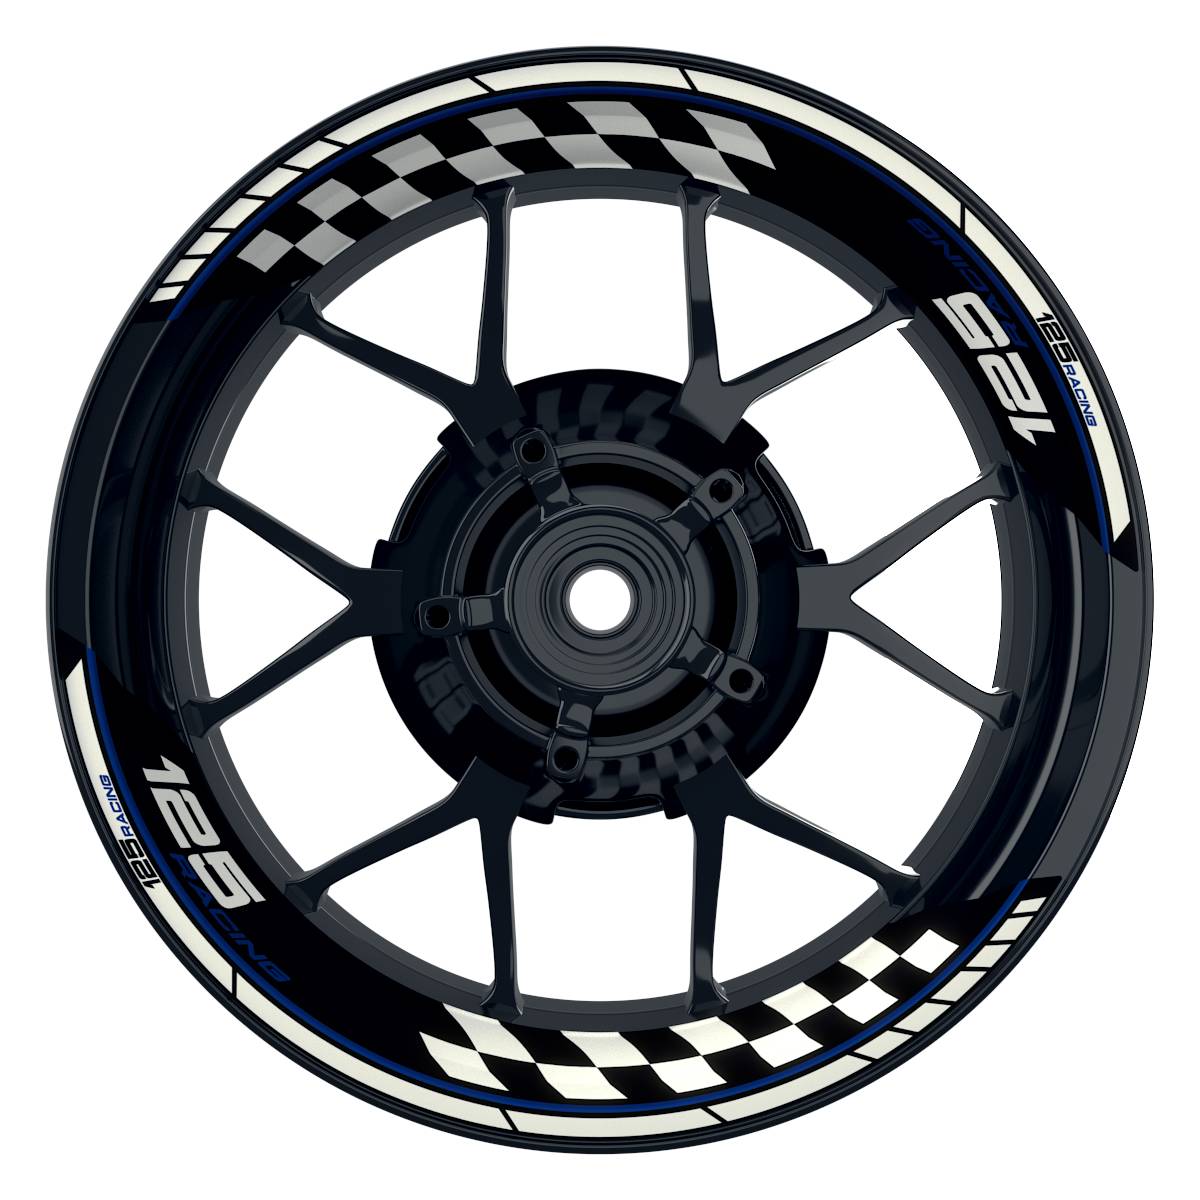 KTM Racing 125 Grid schwarz blau Frontansicht